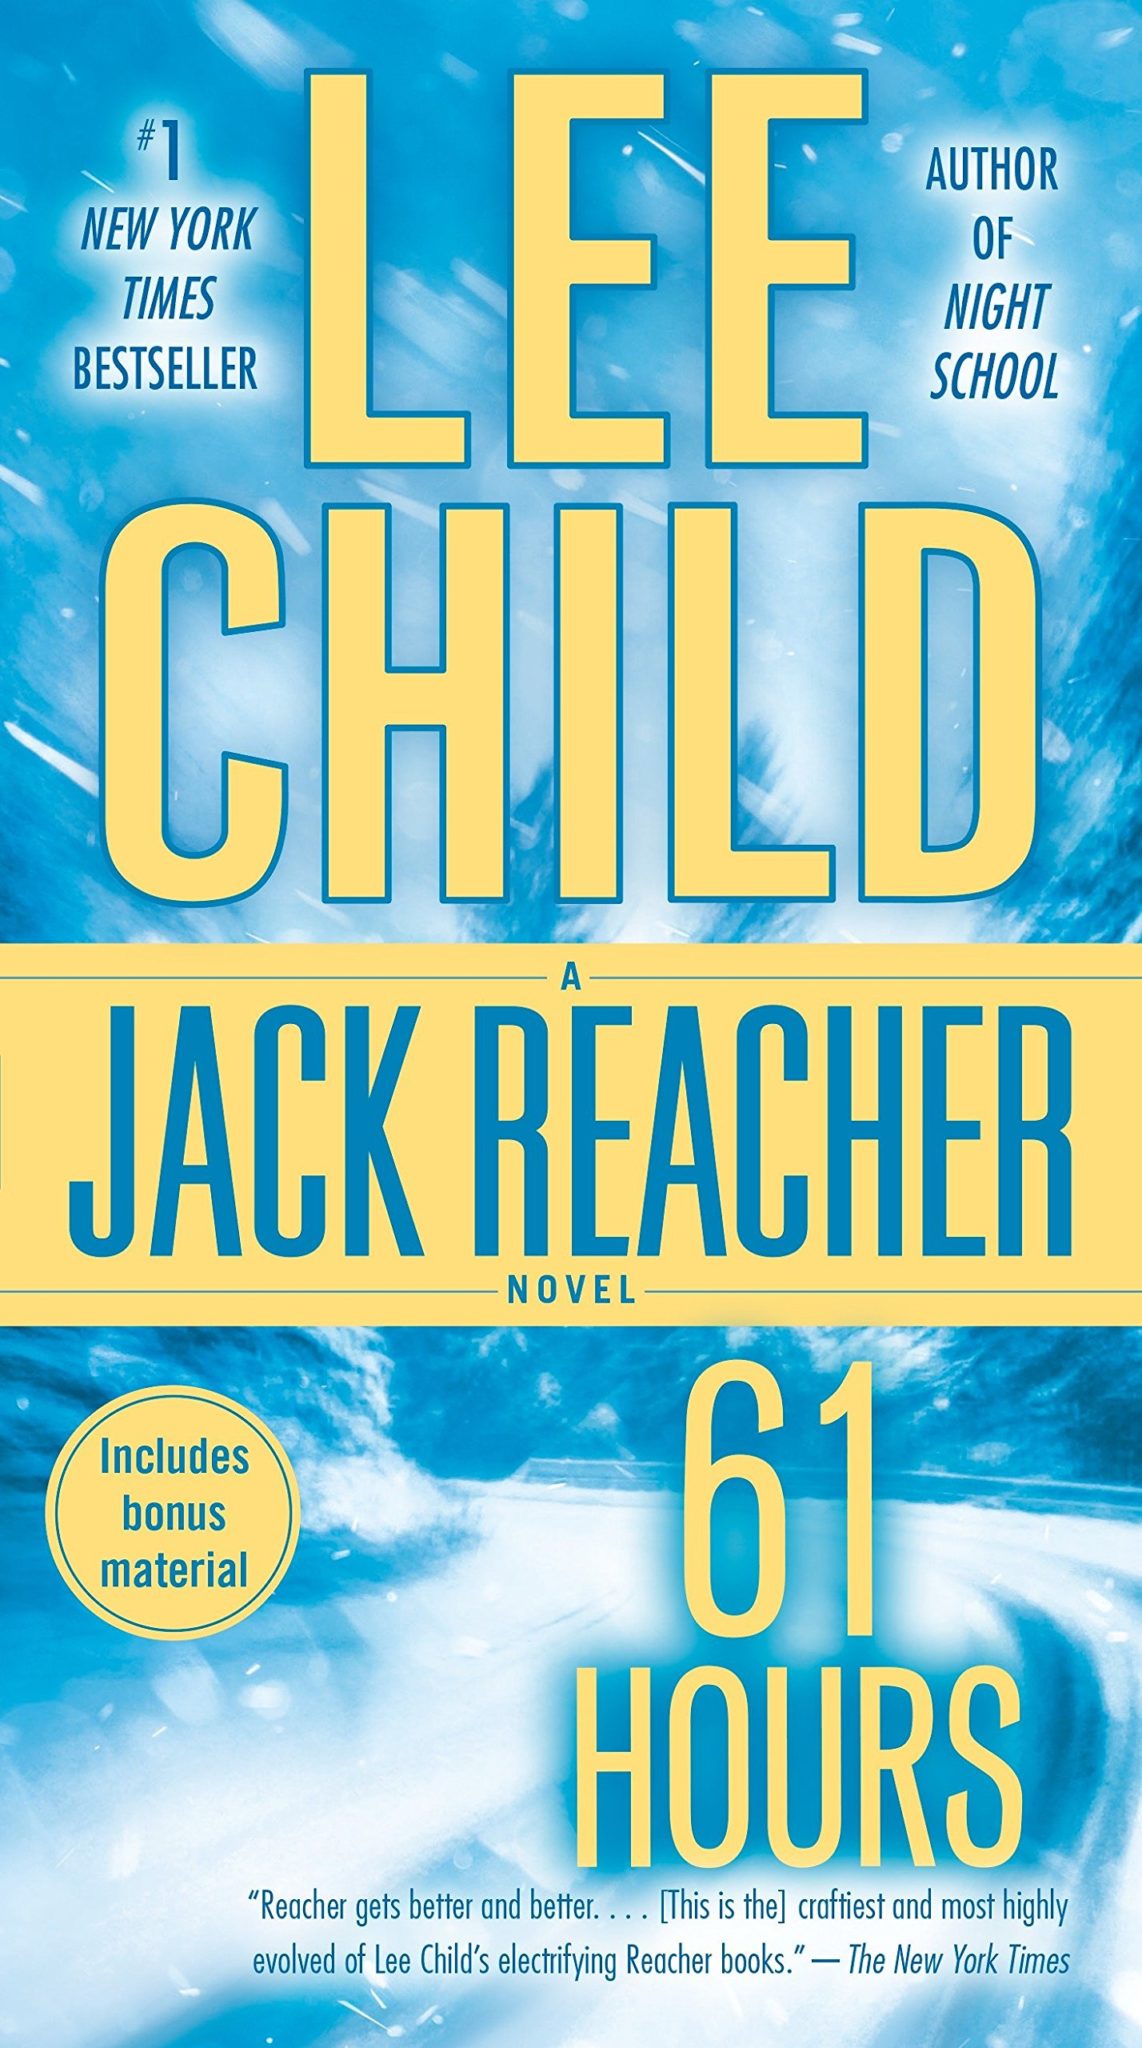 L'elenco completo dei libri di Jack Reacher in ordine